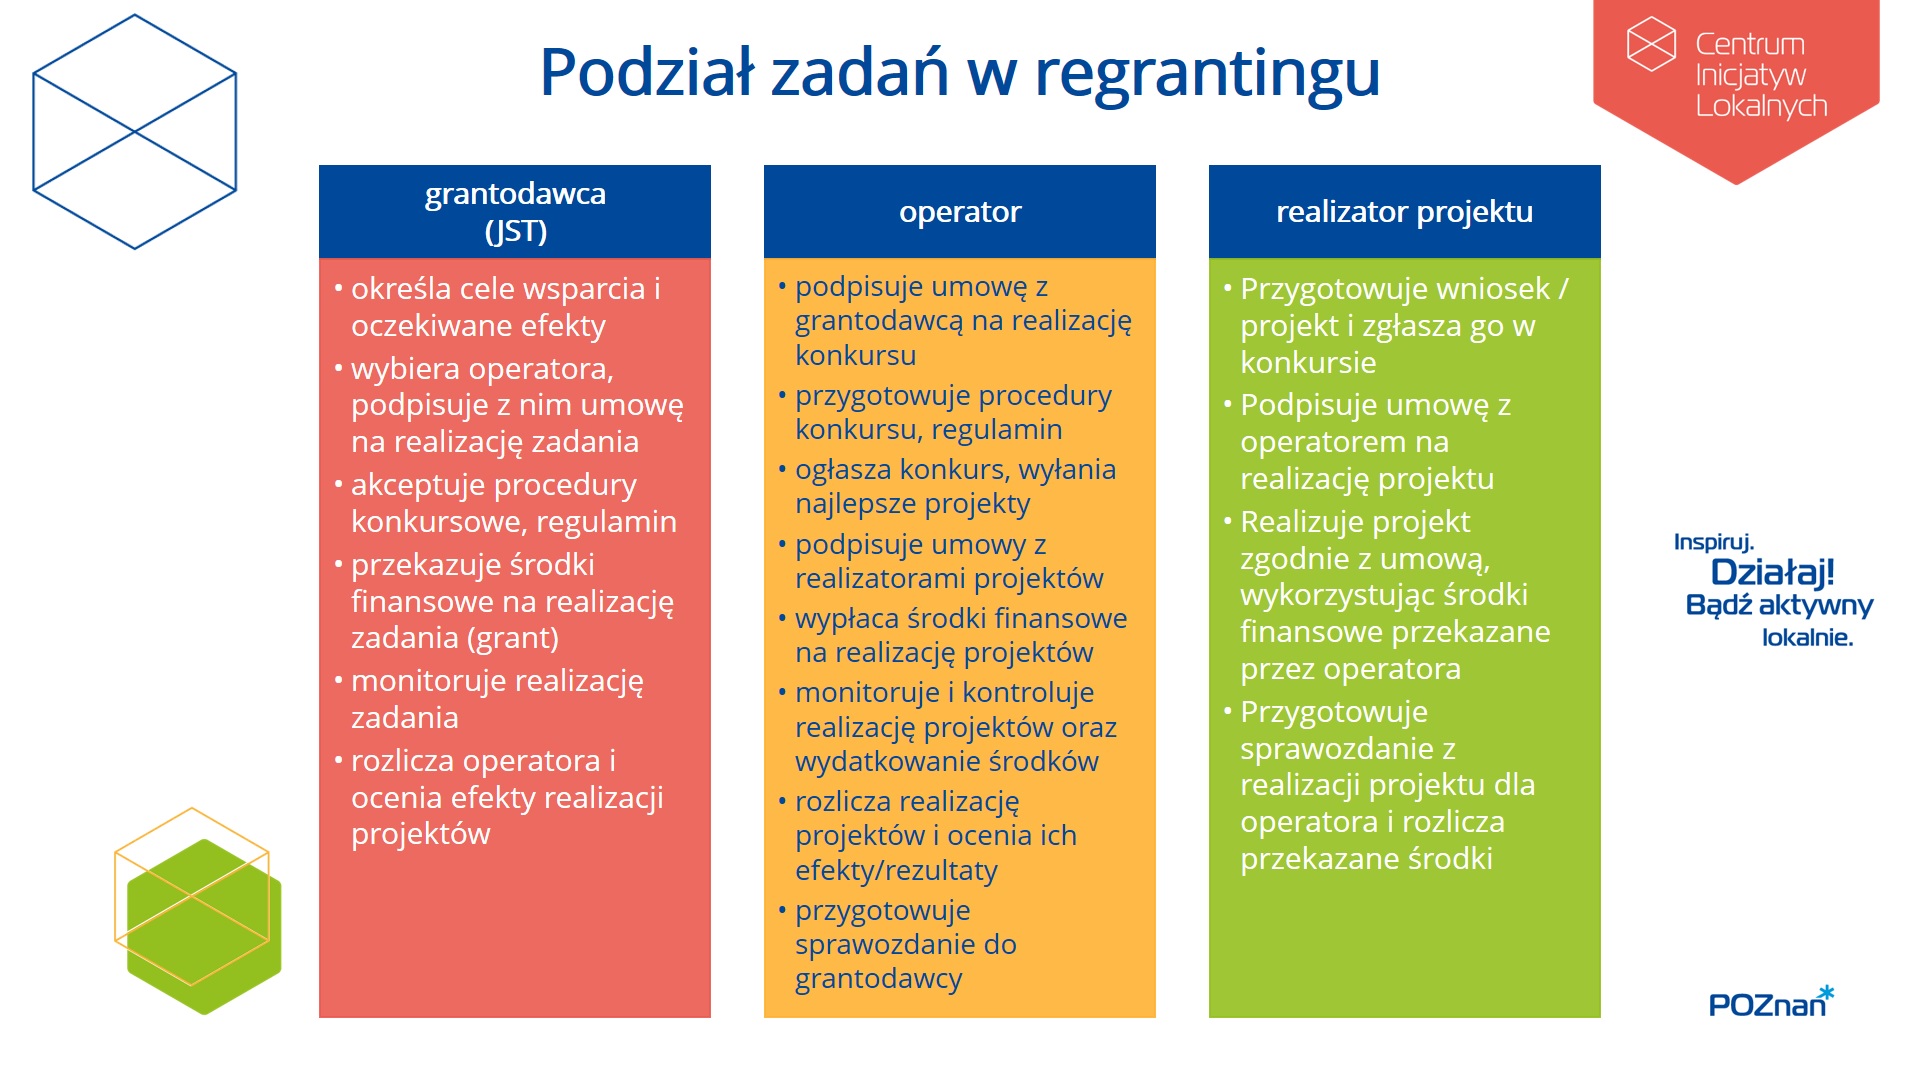 tabela z podziałem działań w regrantingu (zadania Grantodawcy, Operatora i Realizatora projektu)